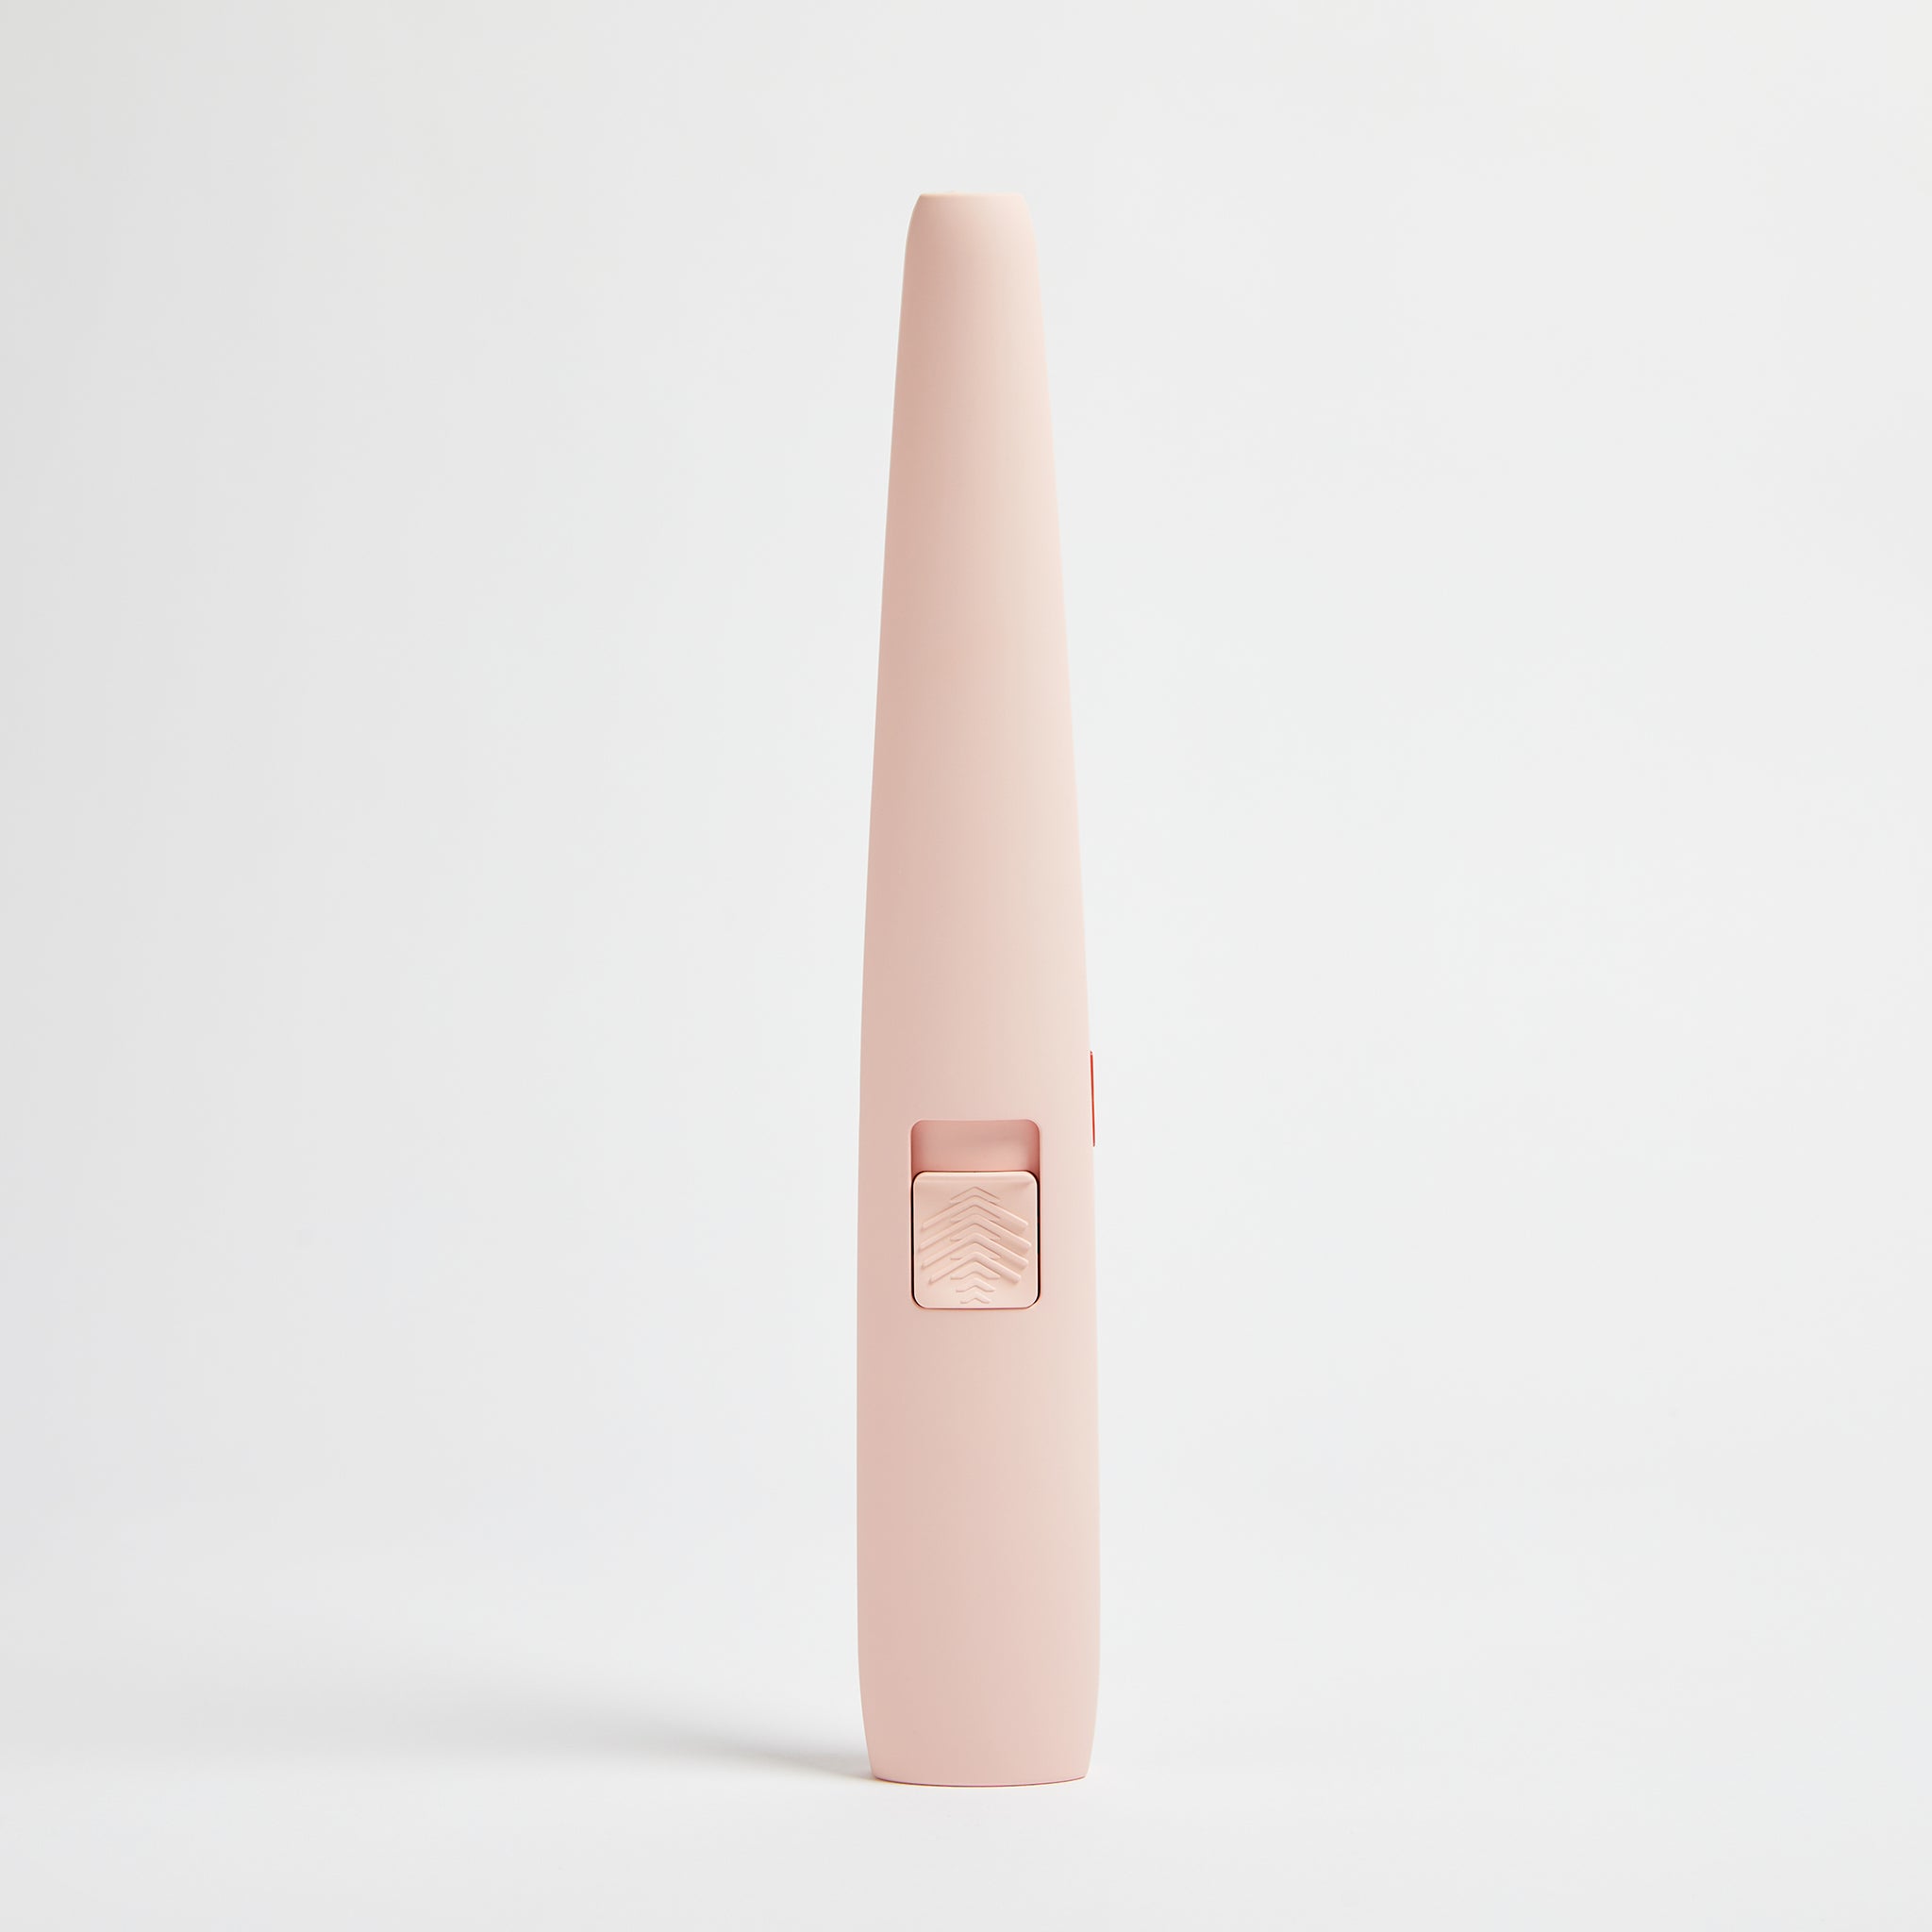 MJR Electric Arc Lighter - Pink